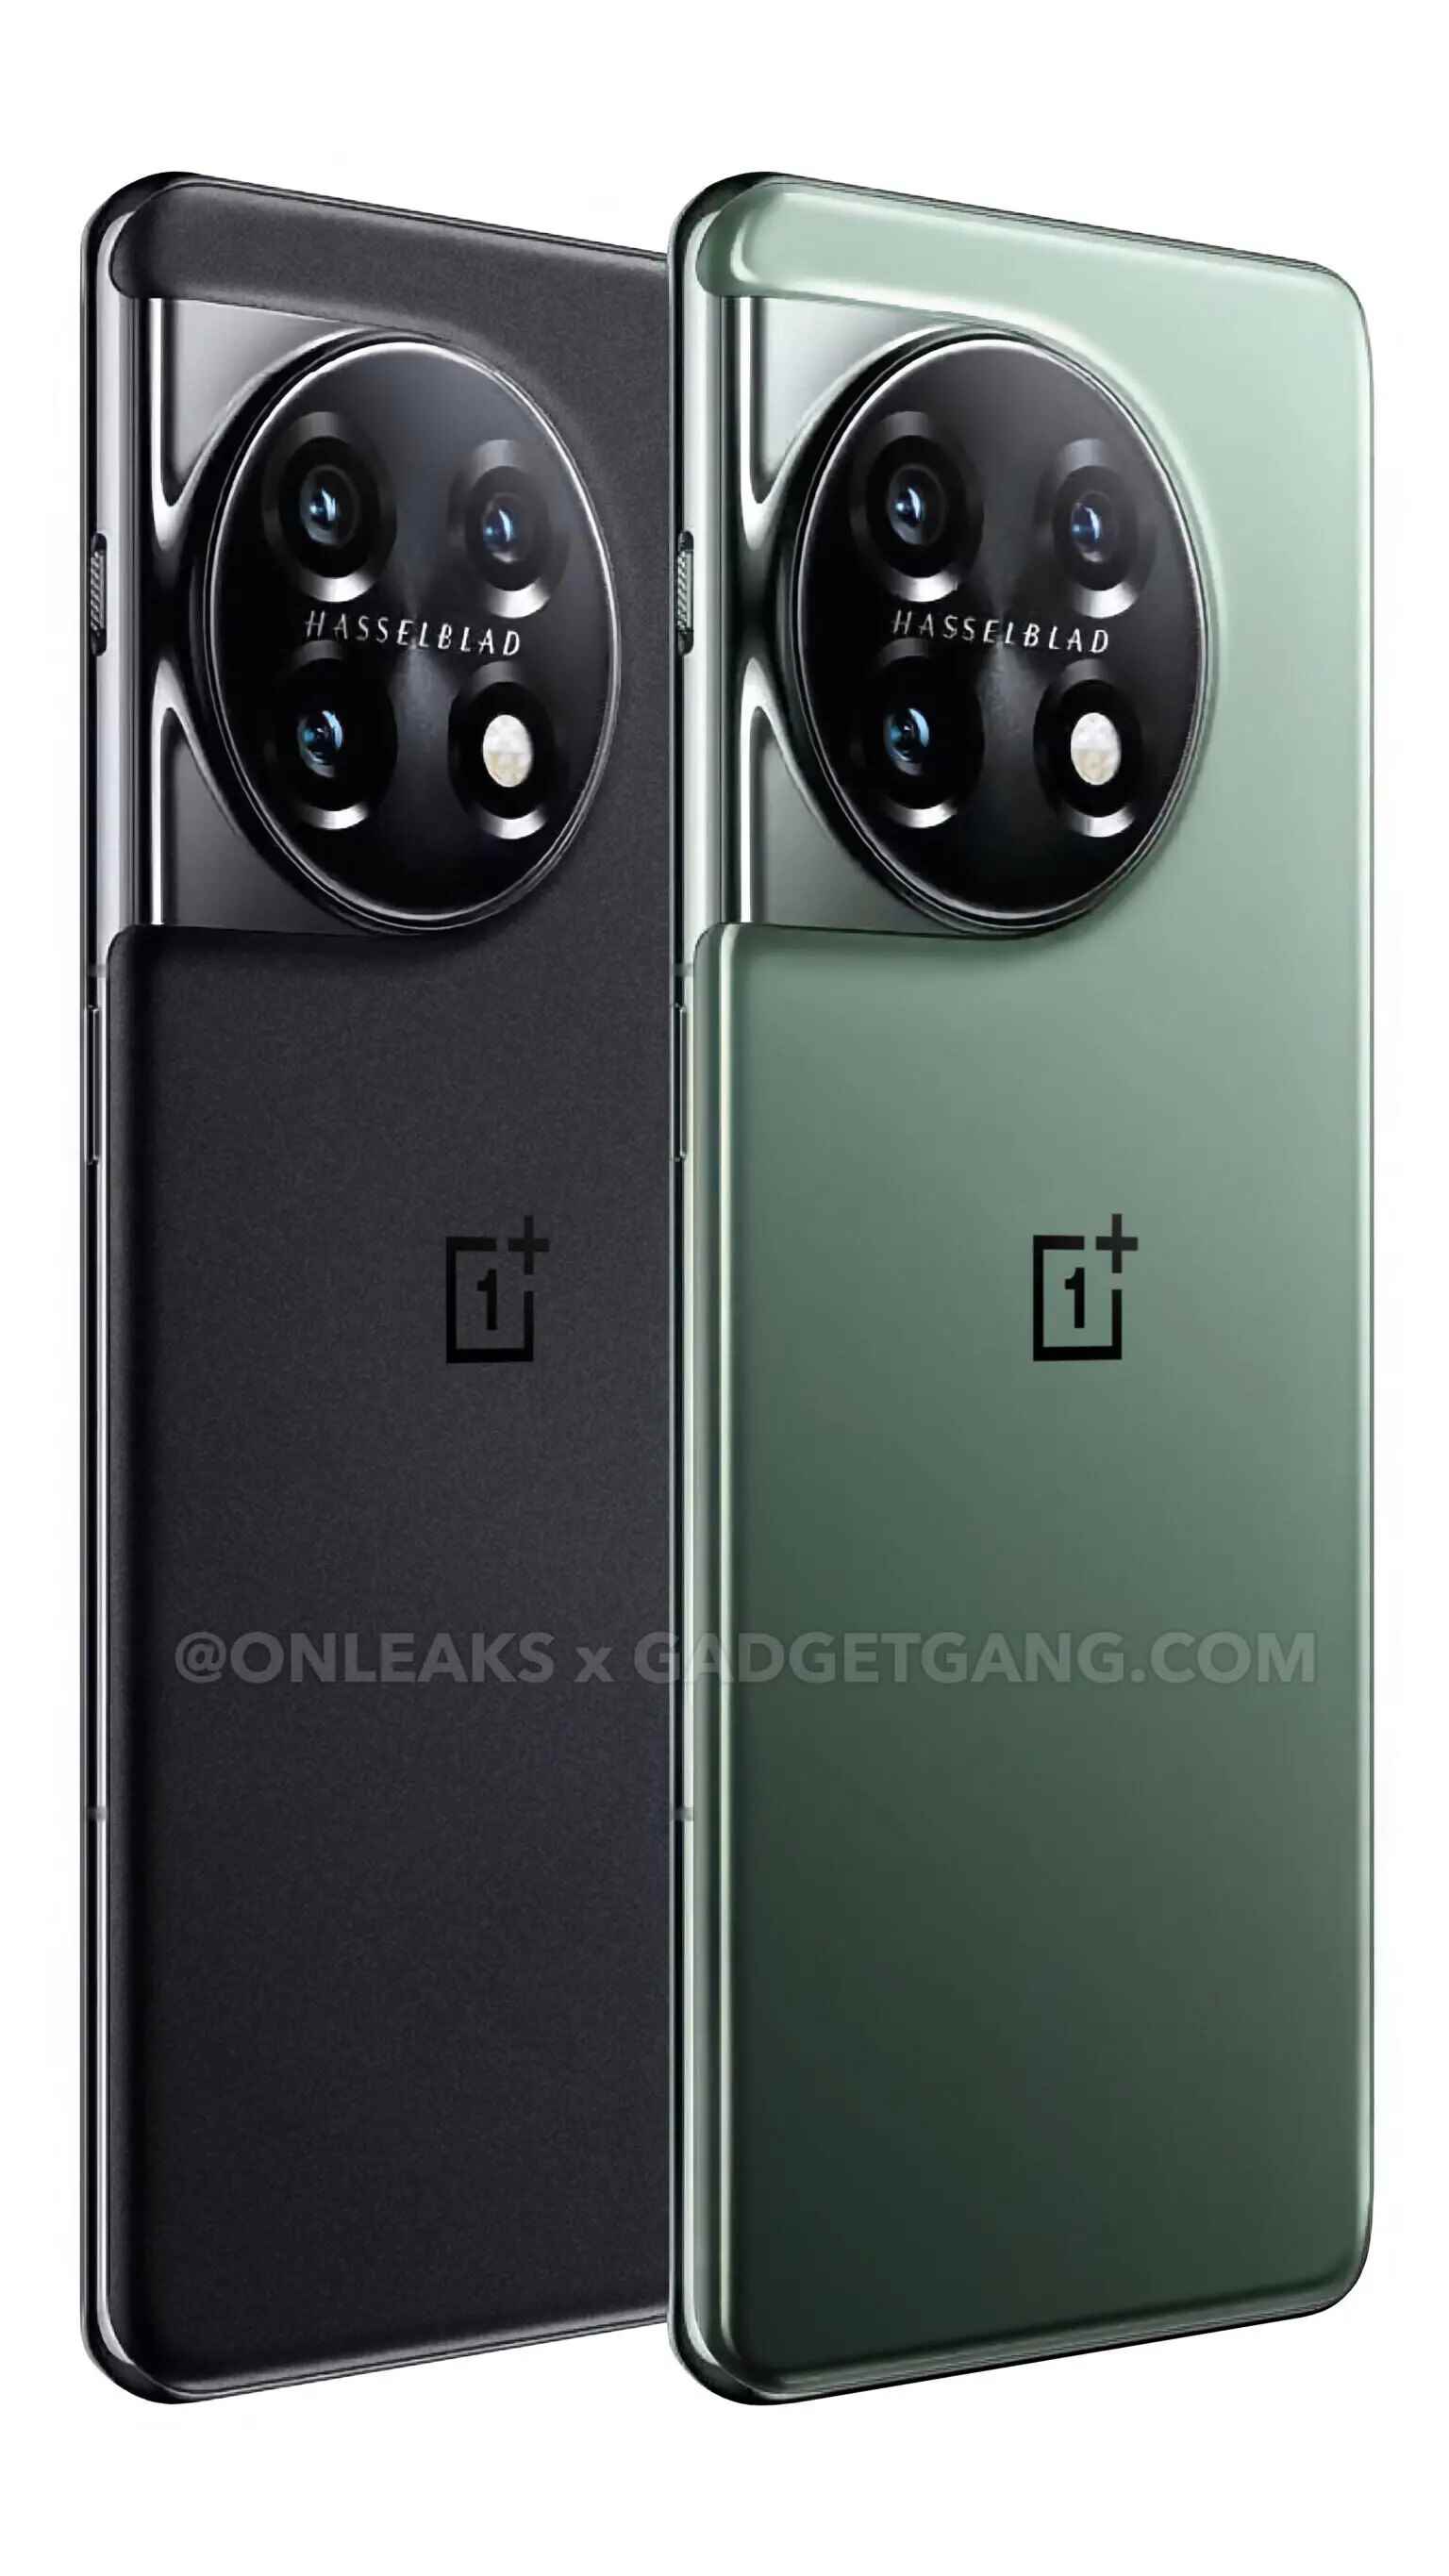 (İmaj Kredisi — OnLeaks ve GadgetGang) İki renkli versiyonda OnePlus 11'in sızdırılmış fotoğrafı - OnePlus 11 renkleri: ne beklemeli?